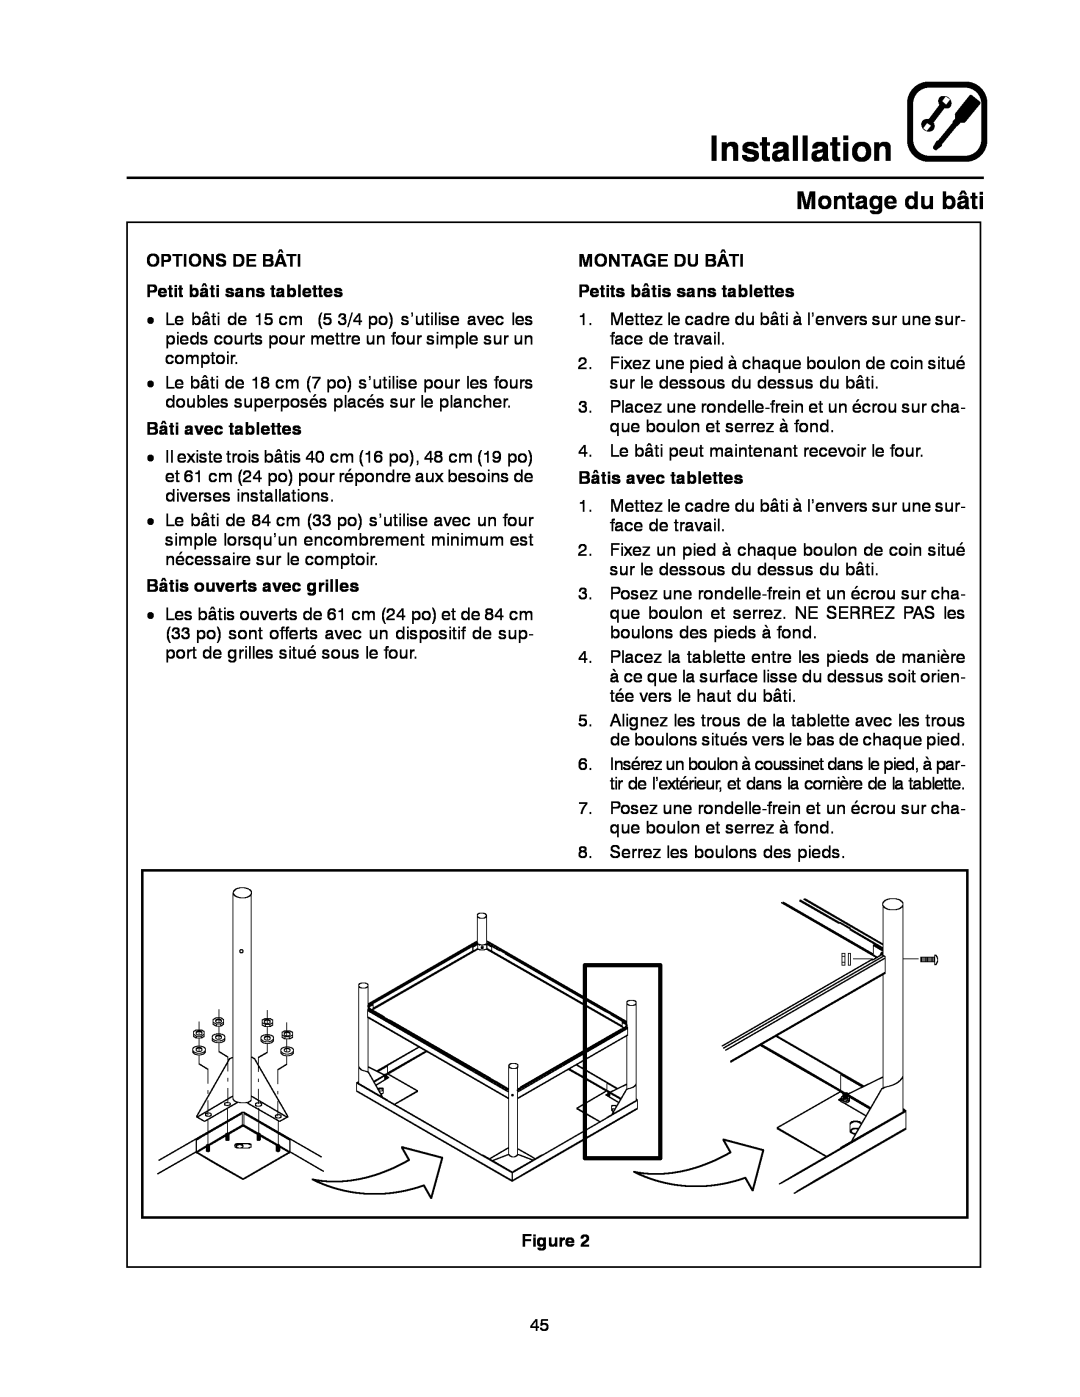 Blodgett DFG-50 manual Montage du bâti, Installation, OPTIONS DE BÂTI Petit bâti sans tablettes, Bâti avec tablettes 